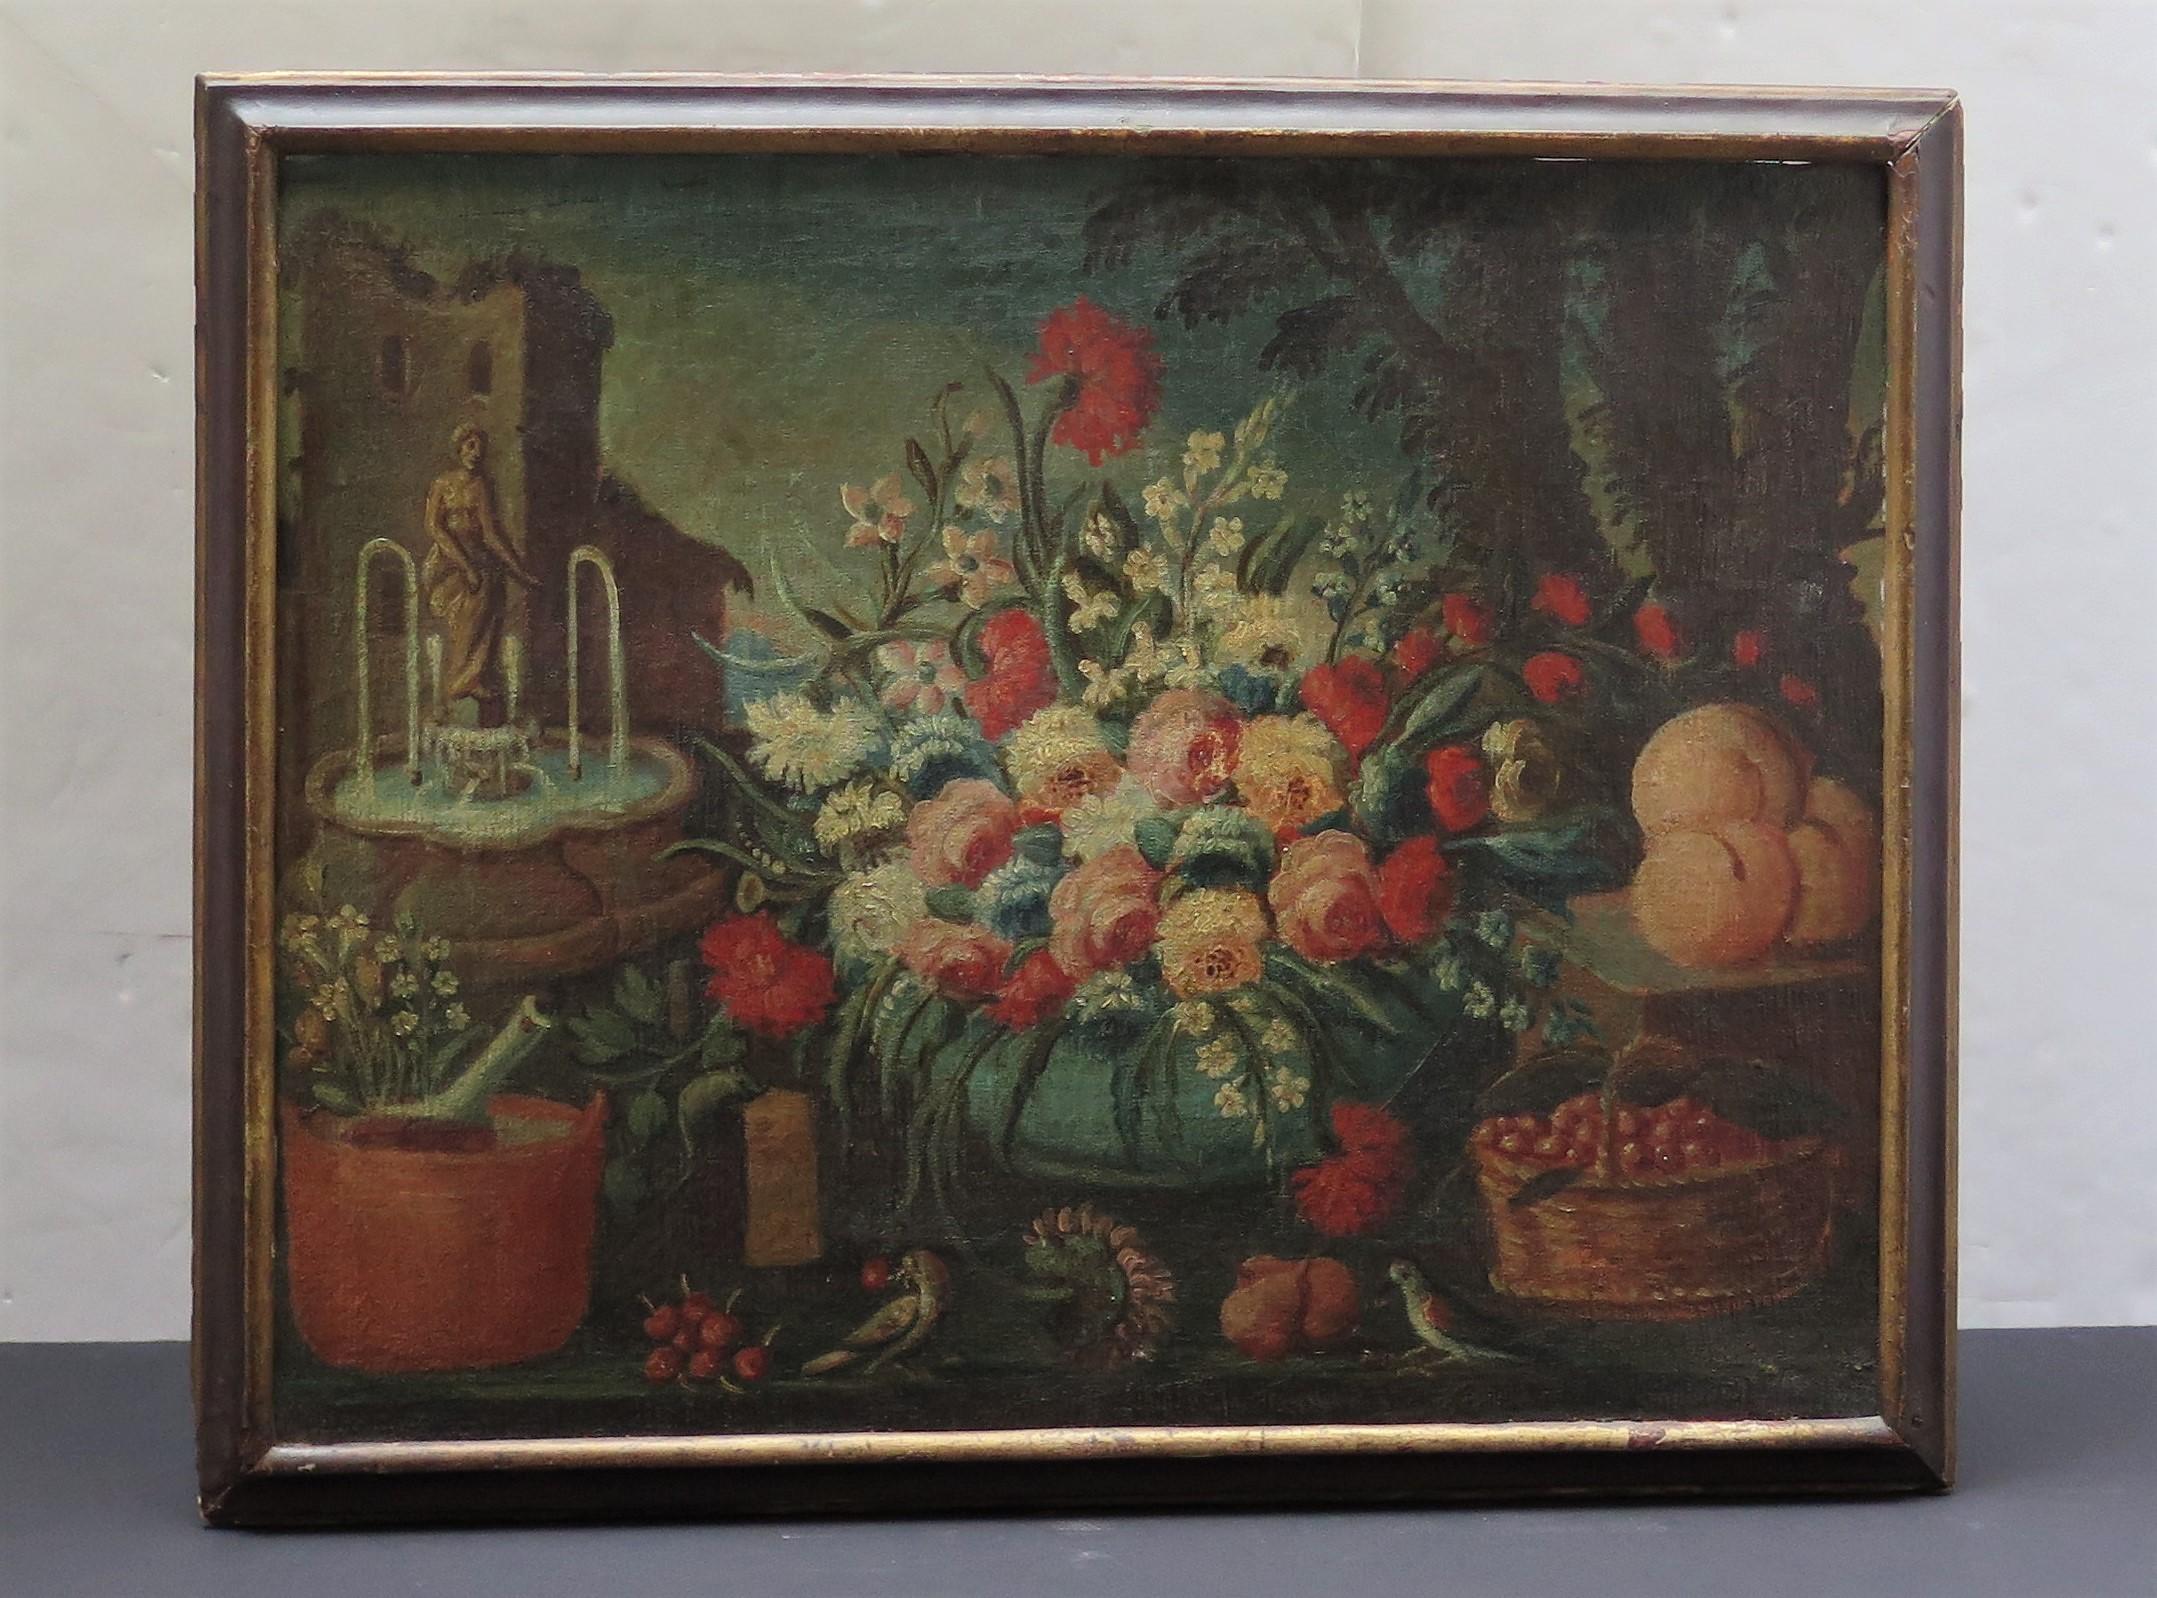 Huile sur toile représentant une composition florale avec des faintains, des oiseaux, des poires, des cerises et des pêches. 
Coloniaux espagnols du 18e siècle